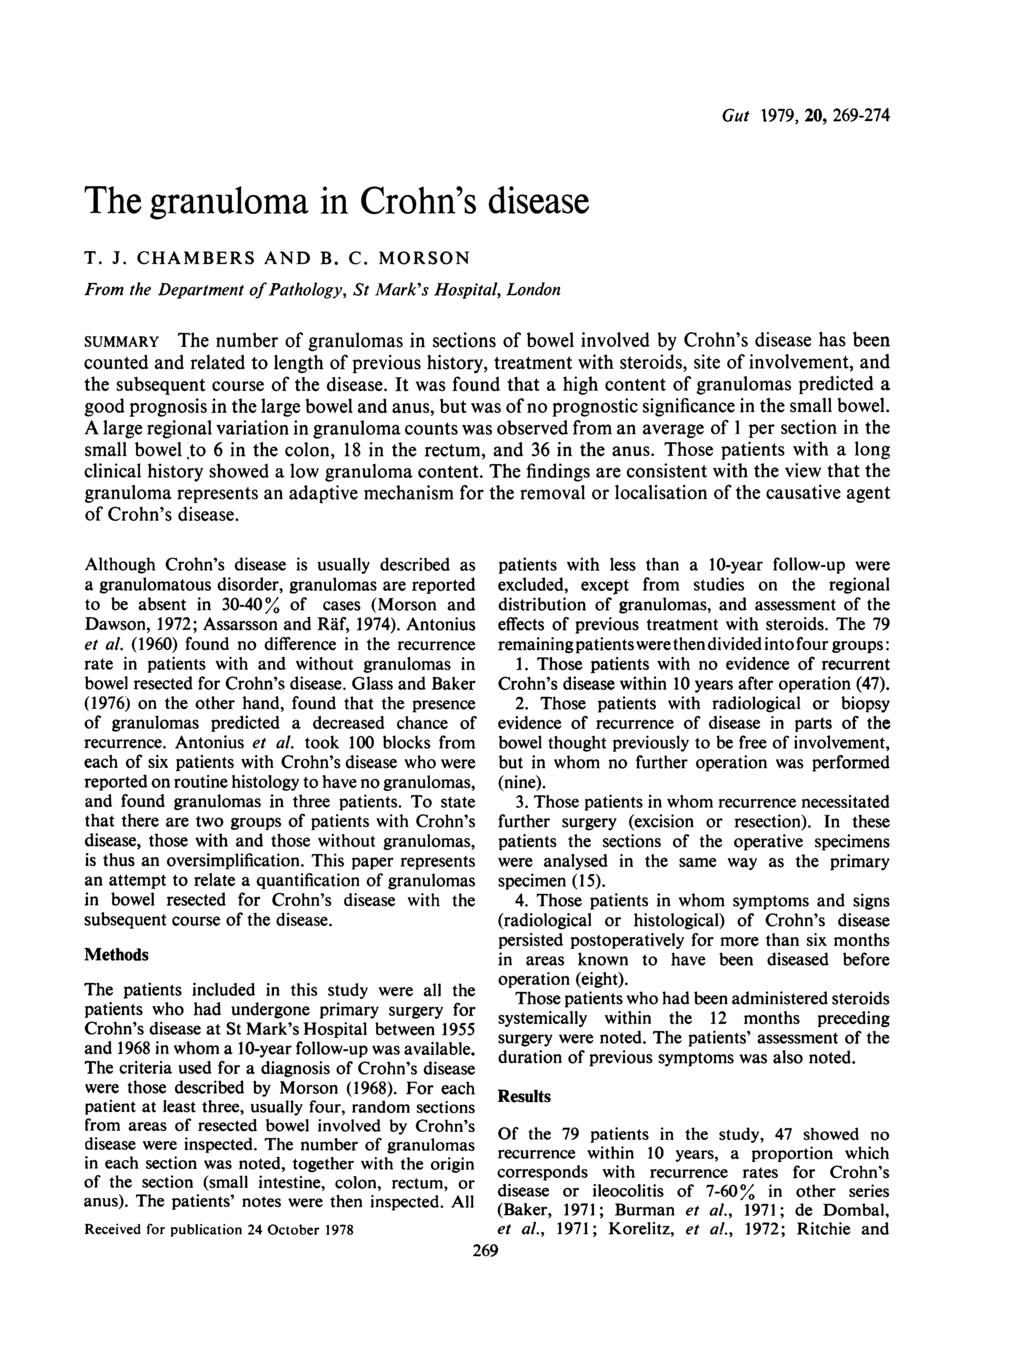 The granuloma in Cr